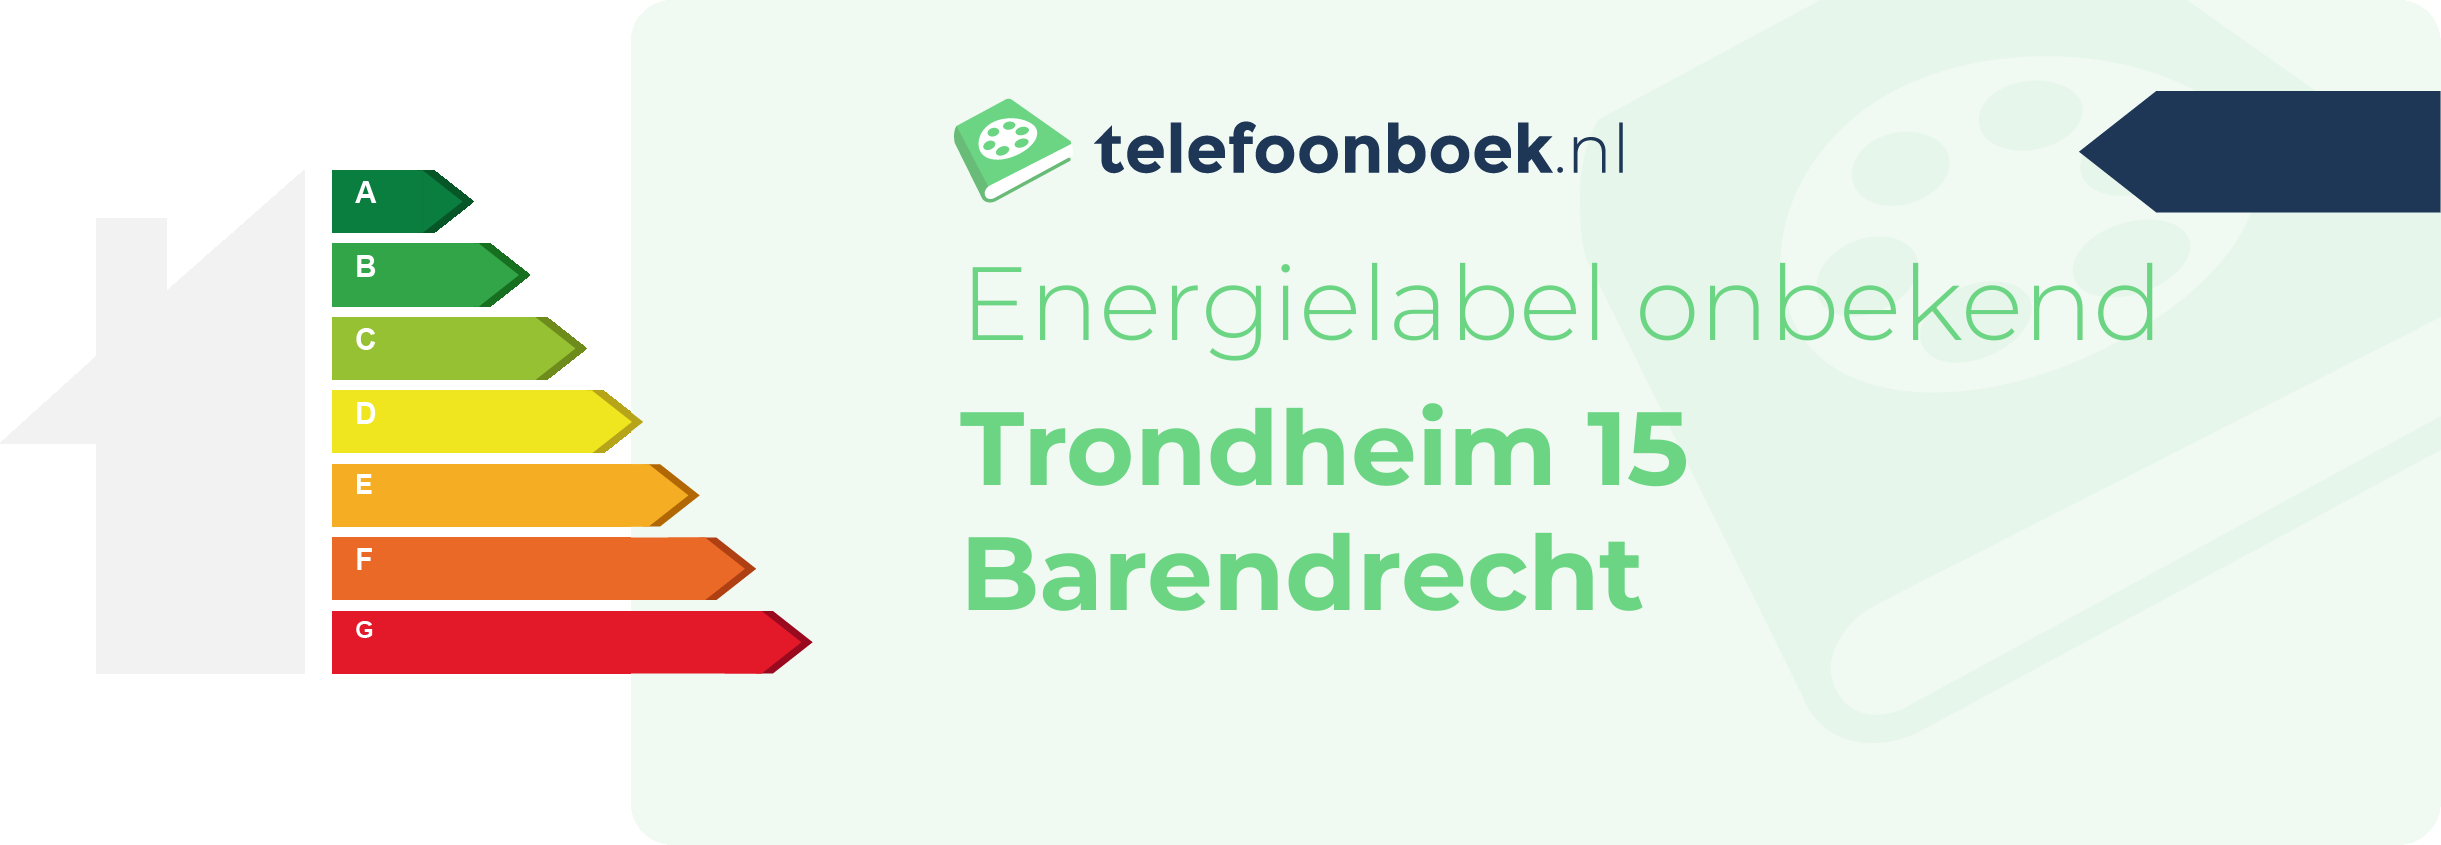 Energielabel Trondheim 15 Barendrecht